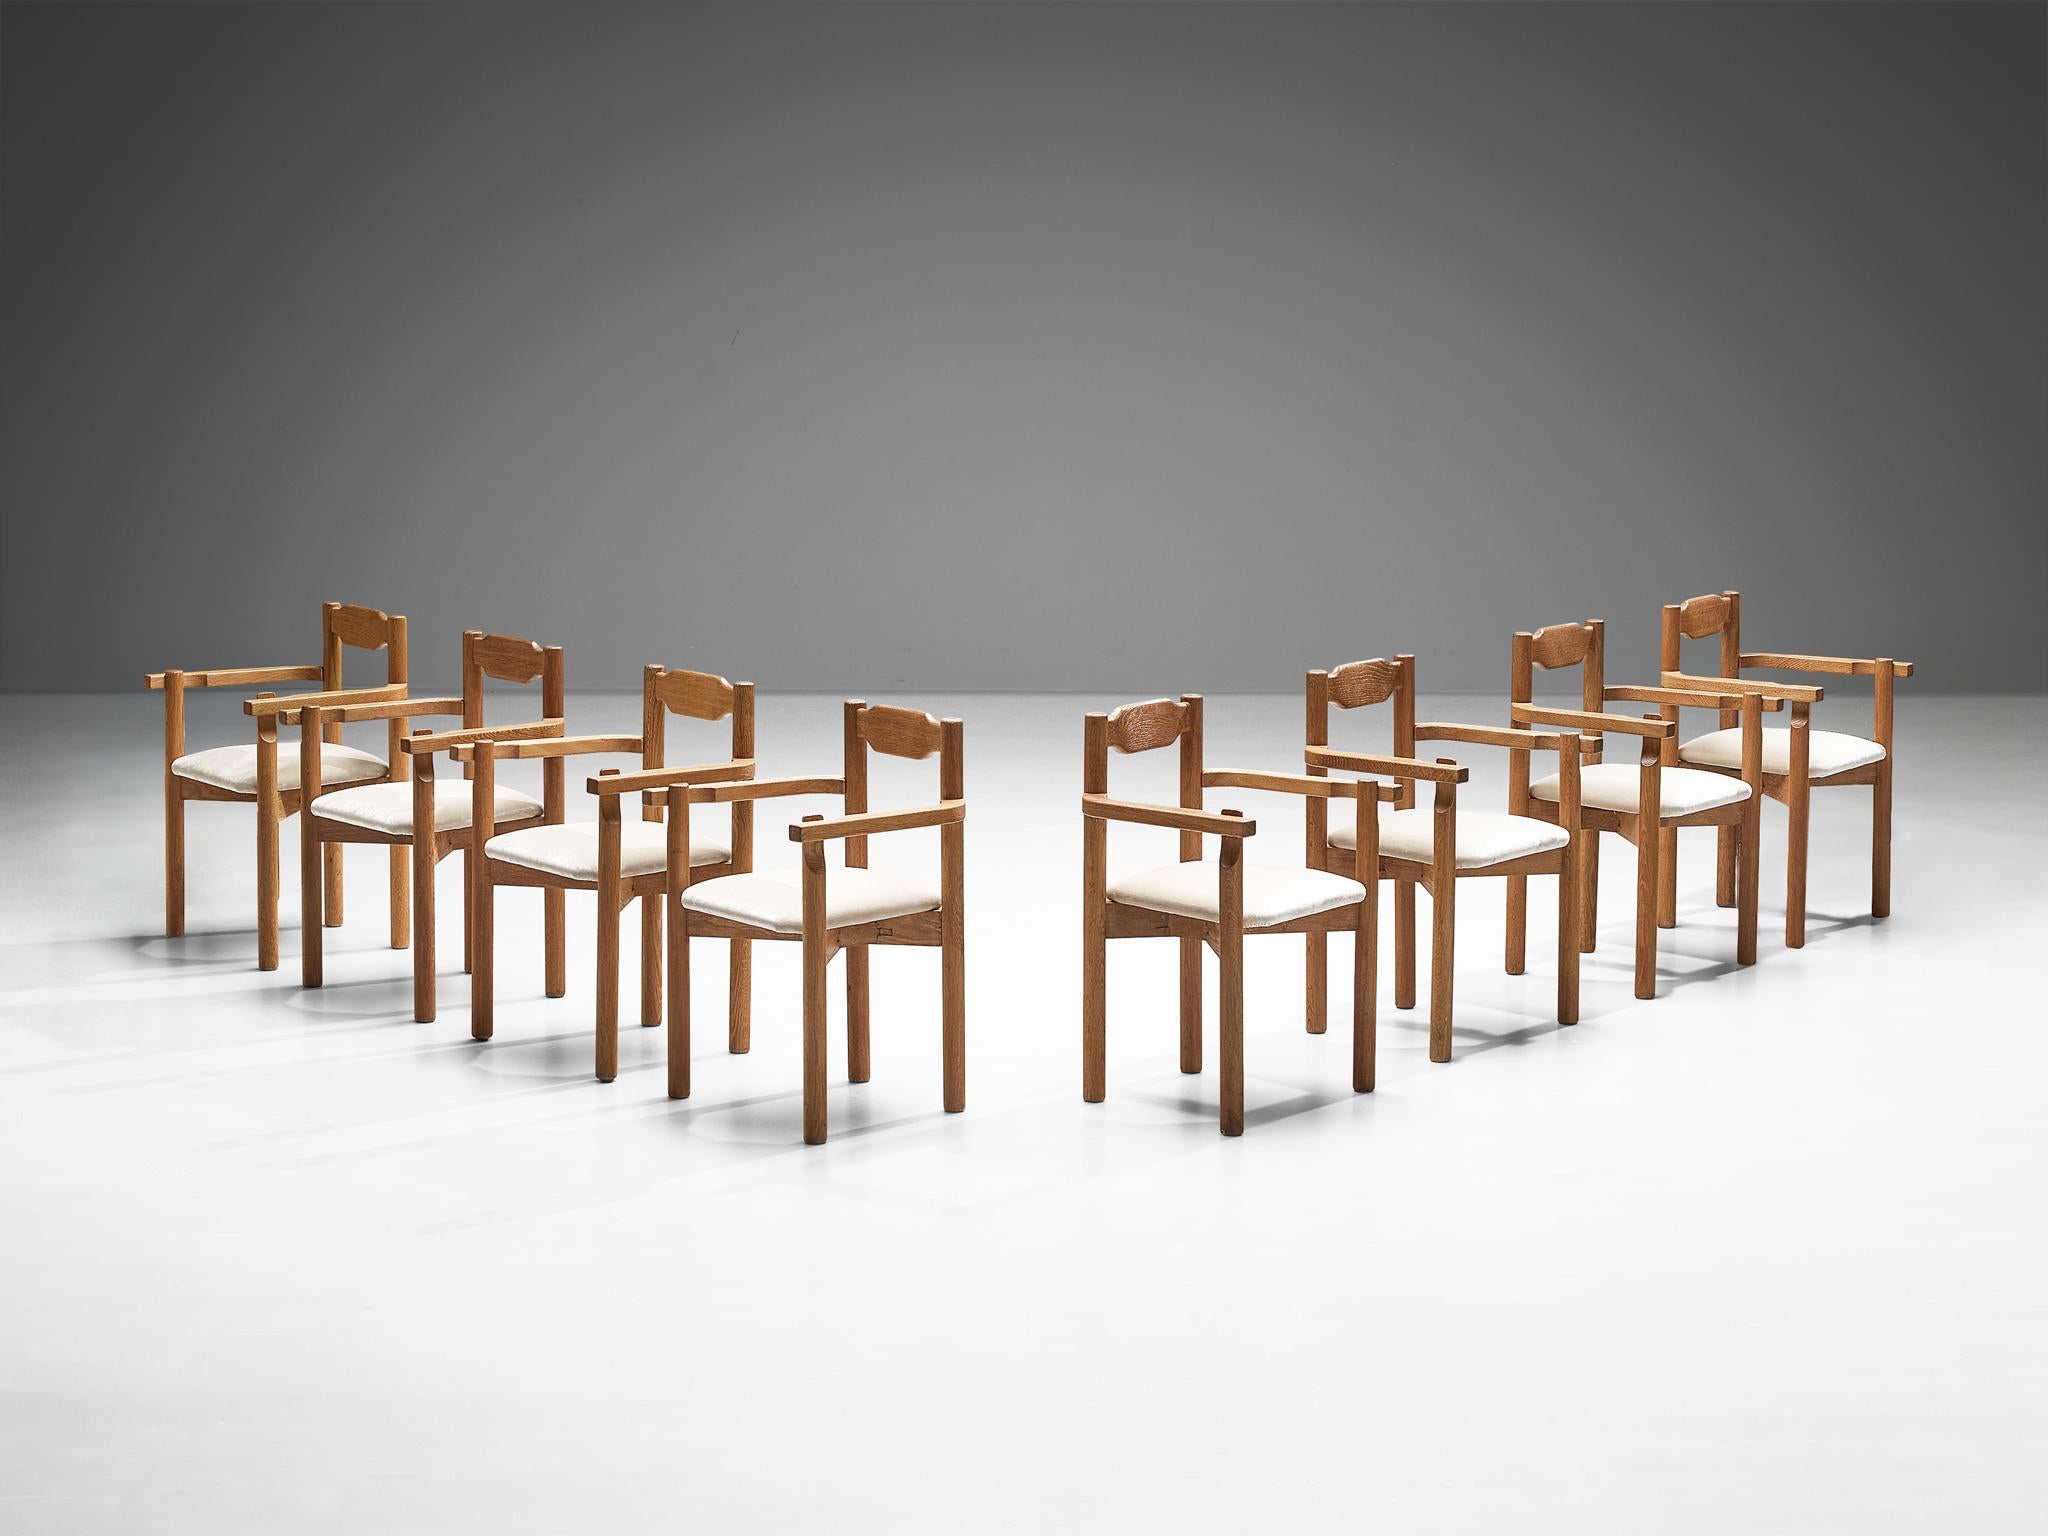 Guillerme & Chambron für Votre Maison, Satz von acht Esszimmerstühlen, Eiche, neu gepolstert mit Mohair, Frankreich, 1960er Jahre

Dieses seltene Sessel-Set wurde von dem französischen Designer-Duo Jacques Chambron und Robert Guillerme entworfen.